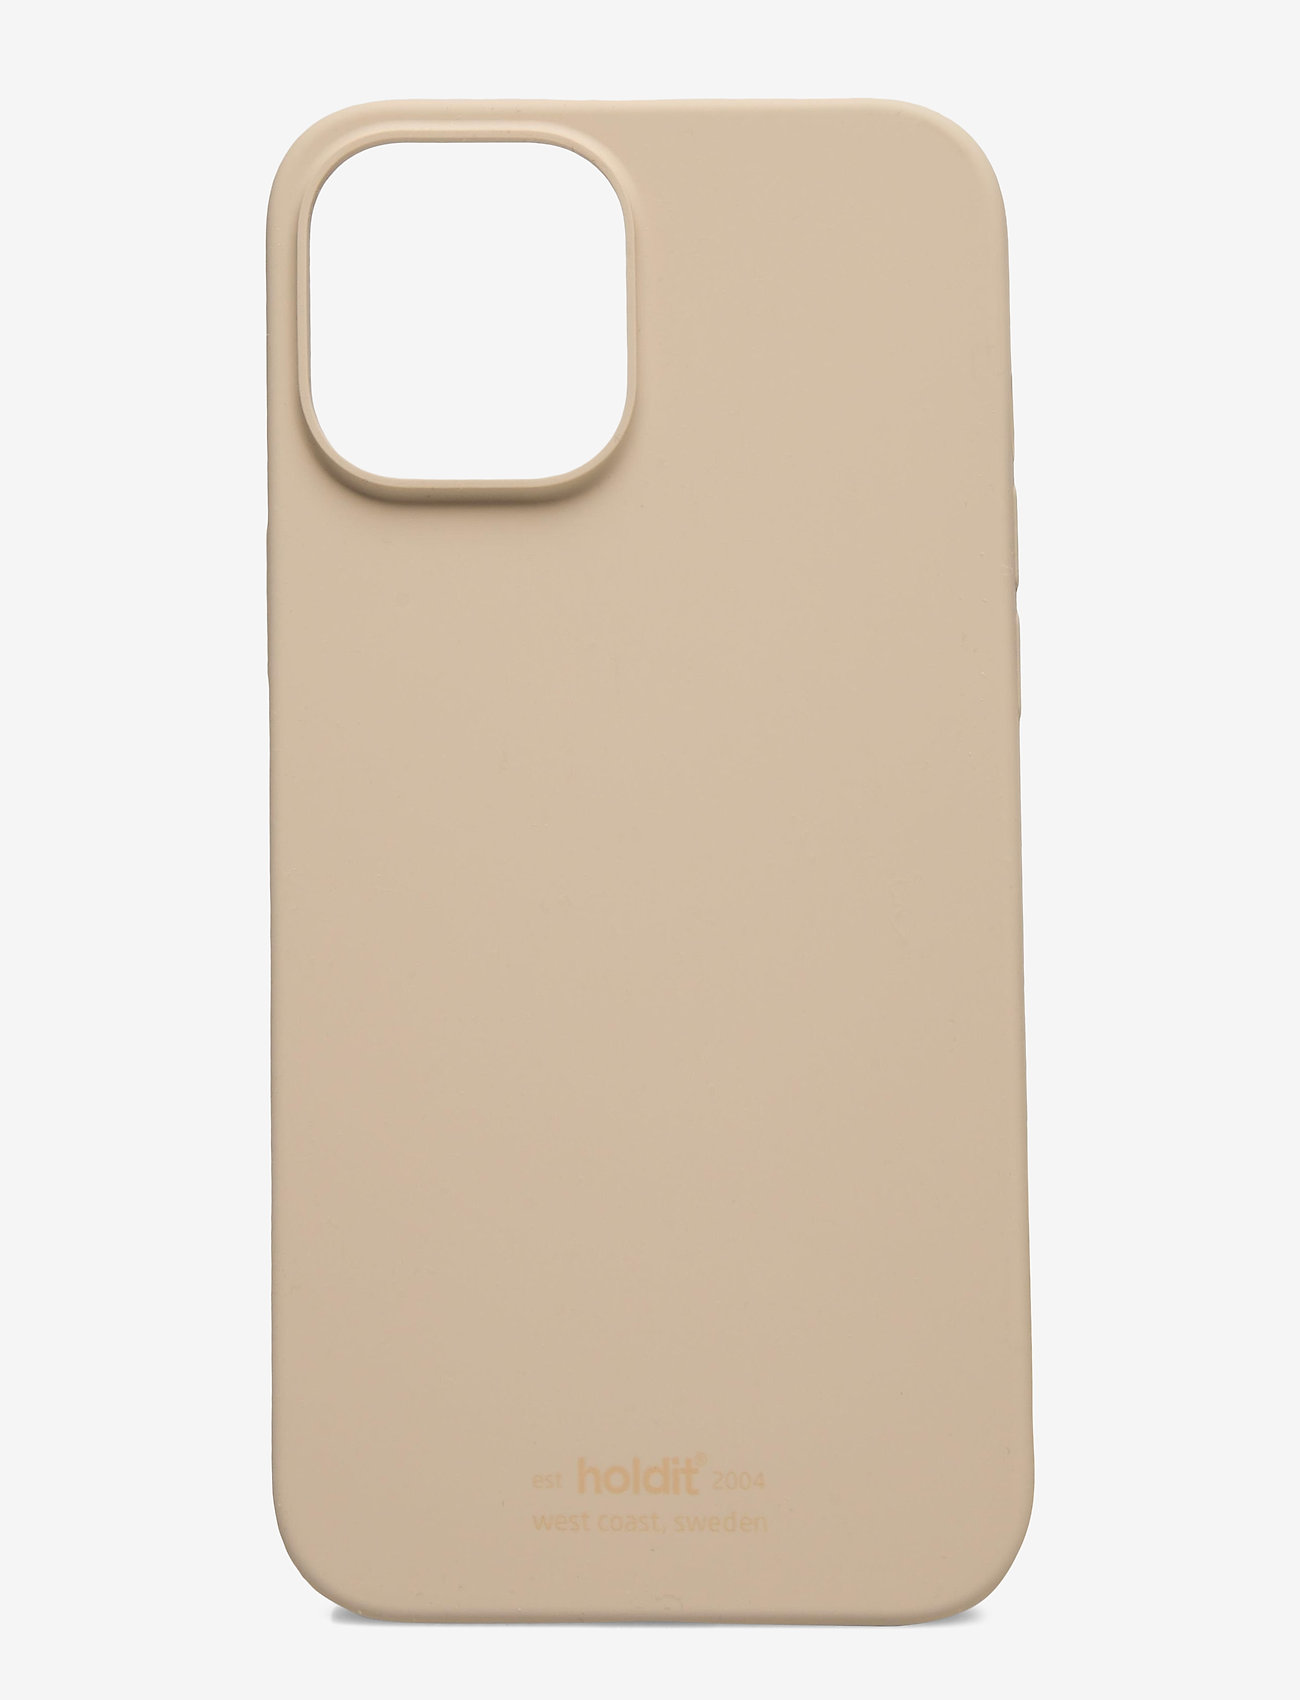 Holdit - Silicone Case iPhone 12Pro Max - die niedrigsten preise - beige - 0